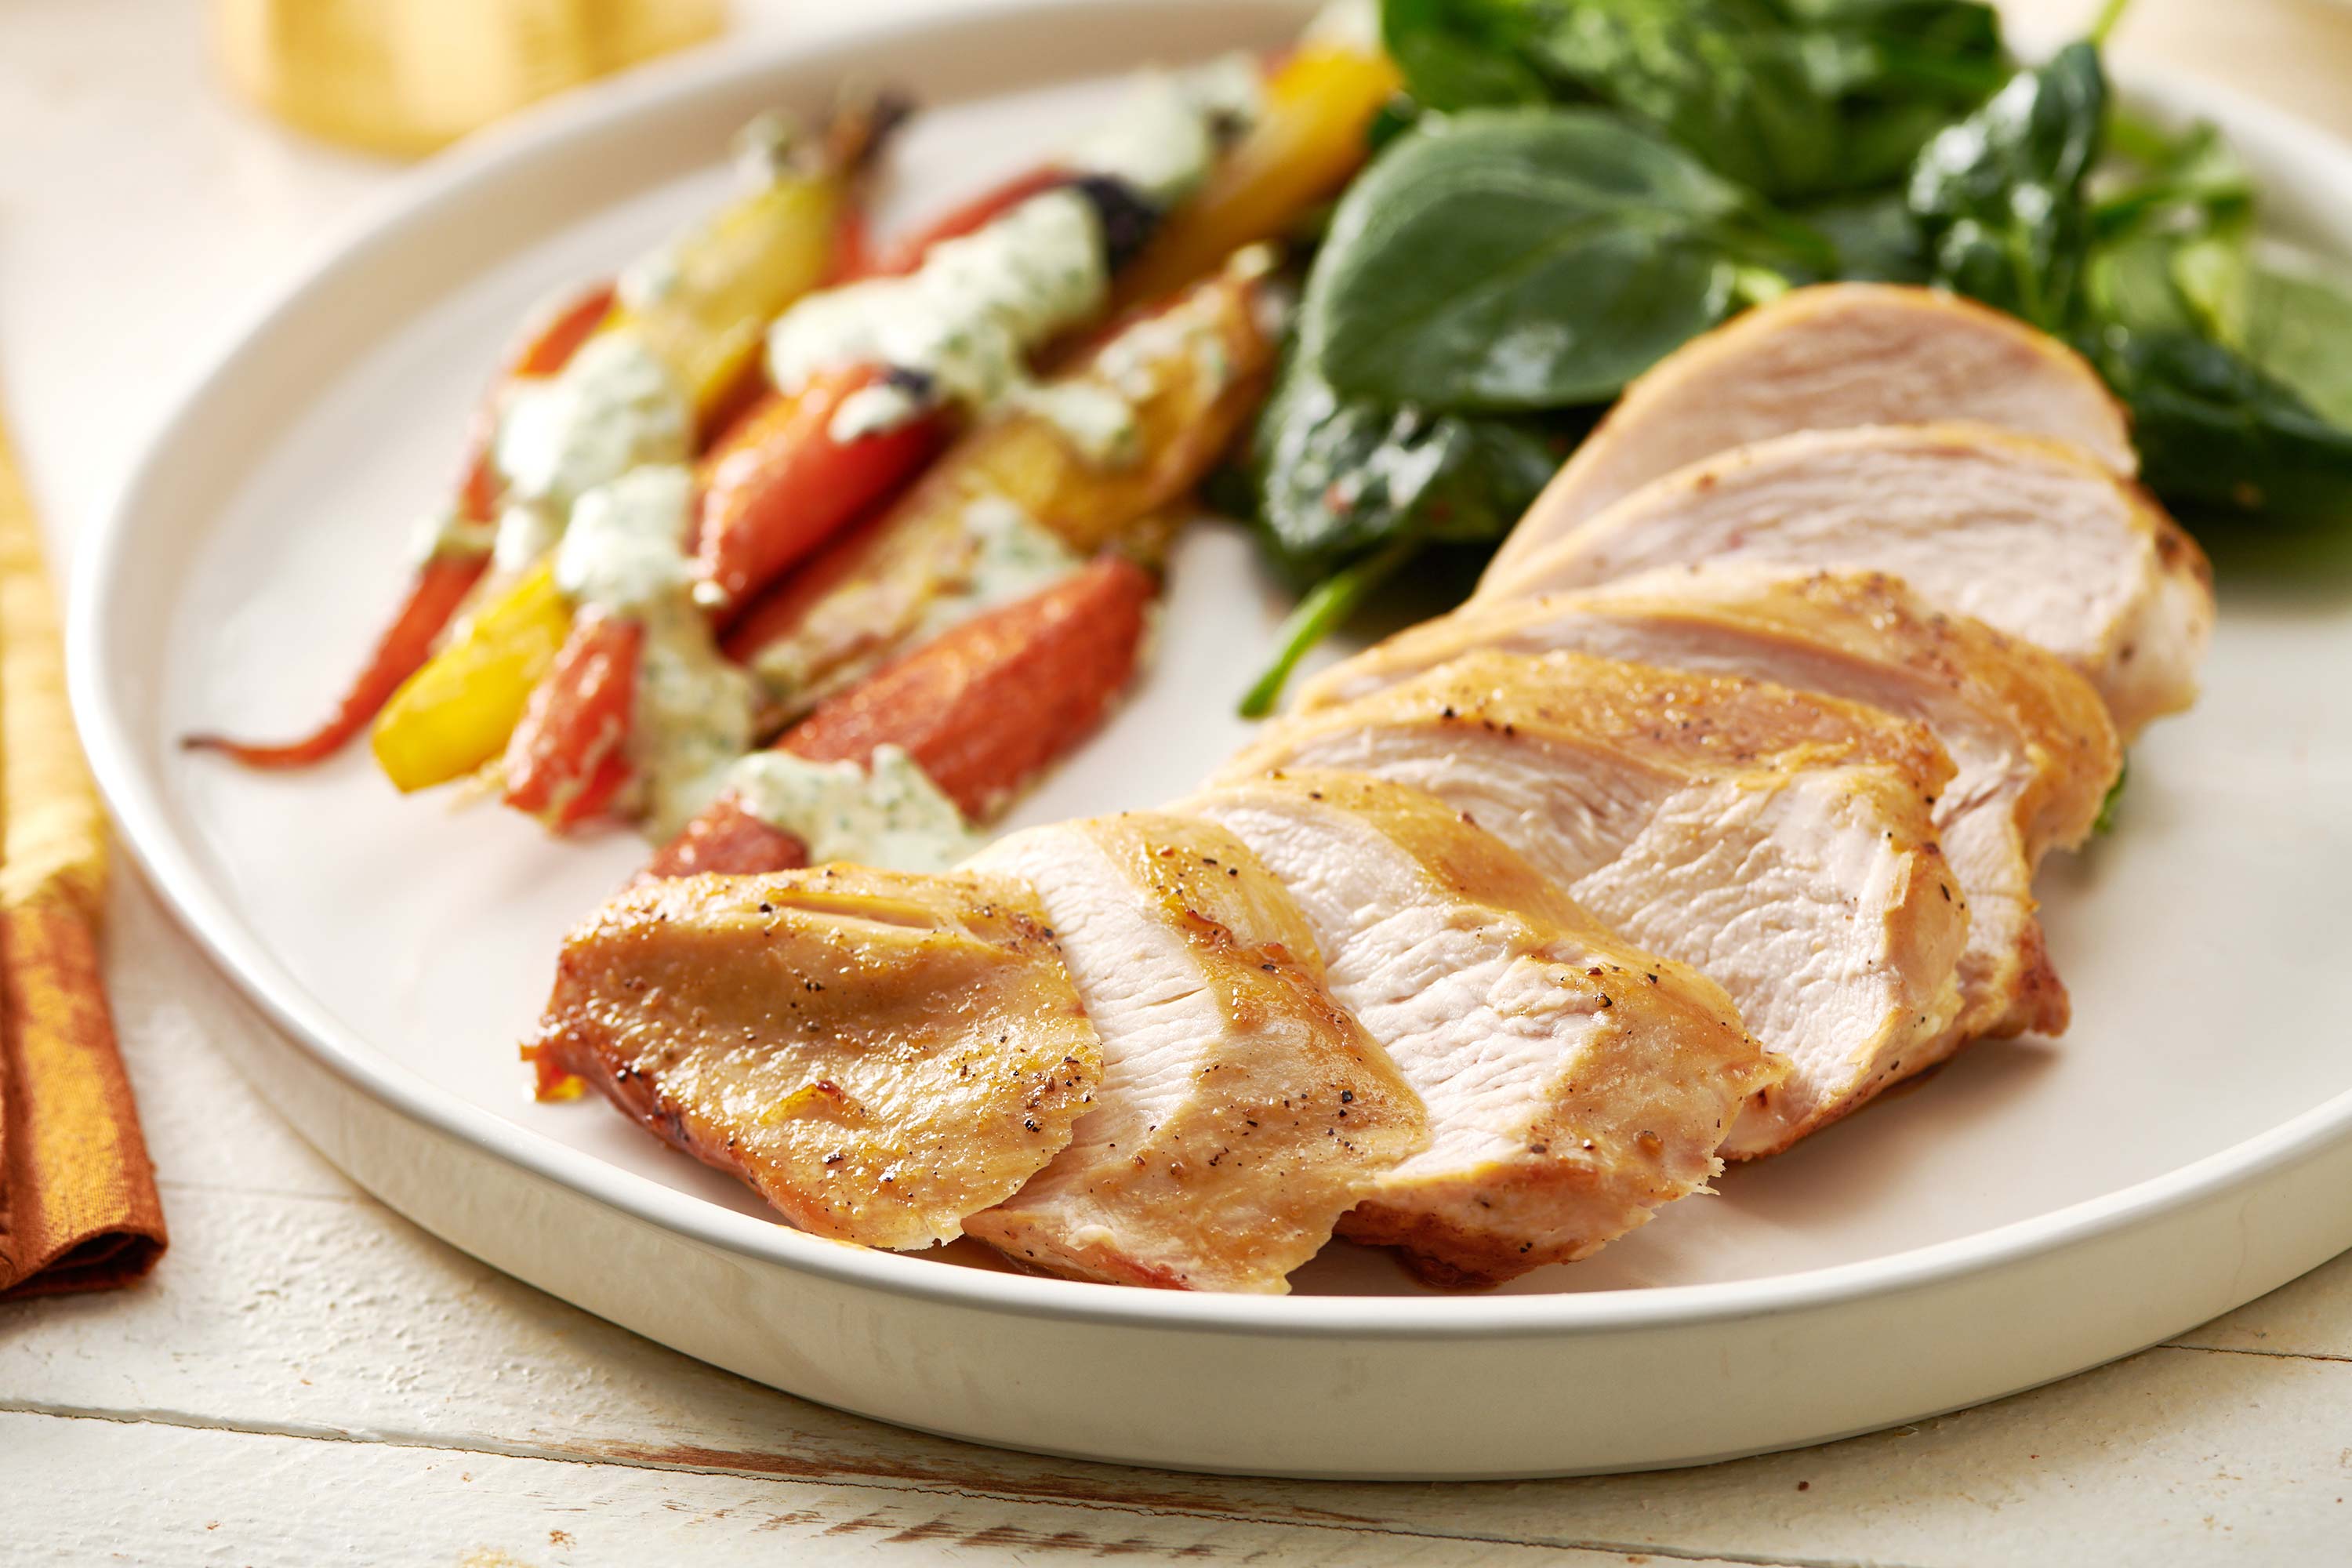 Sliced chicken on plate next to veggie sides.